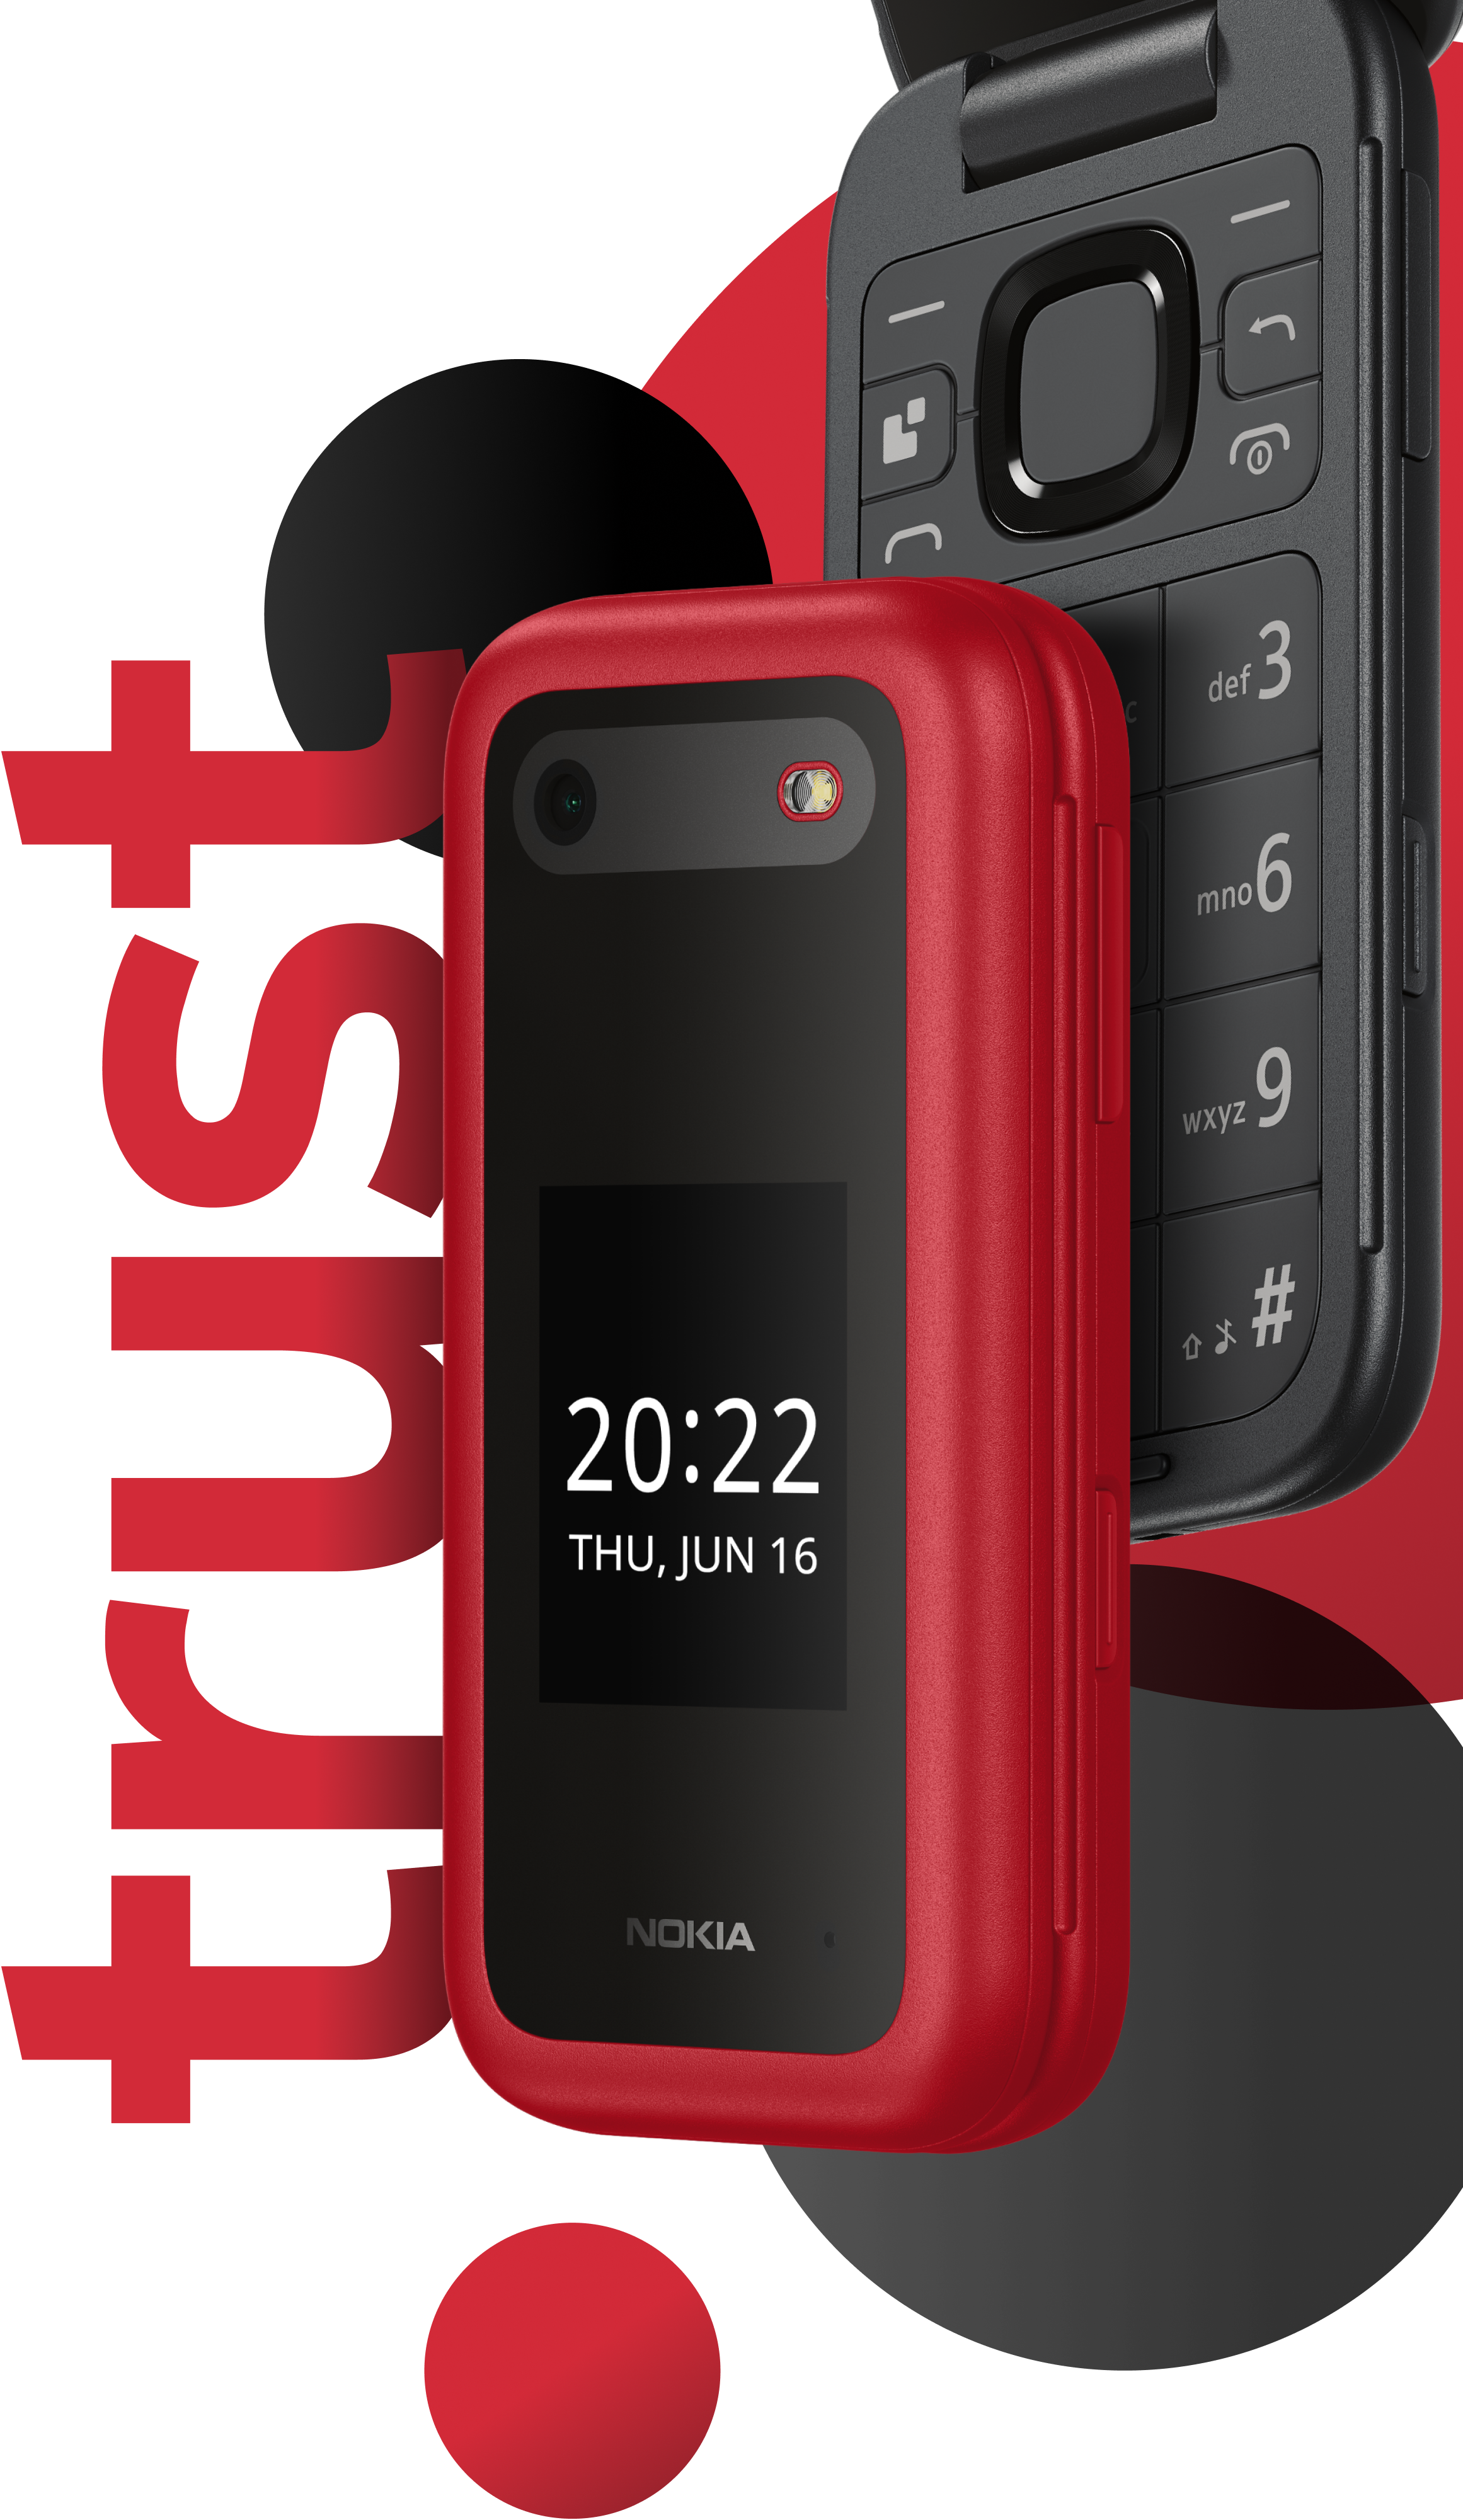 Nokia 2660 Flip - buy 